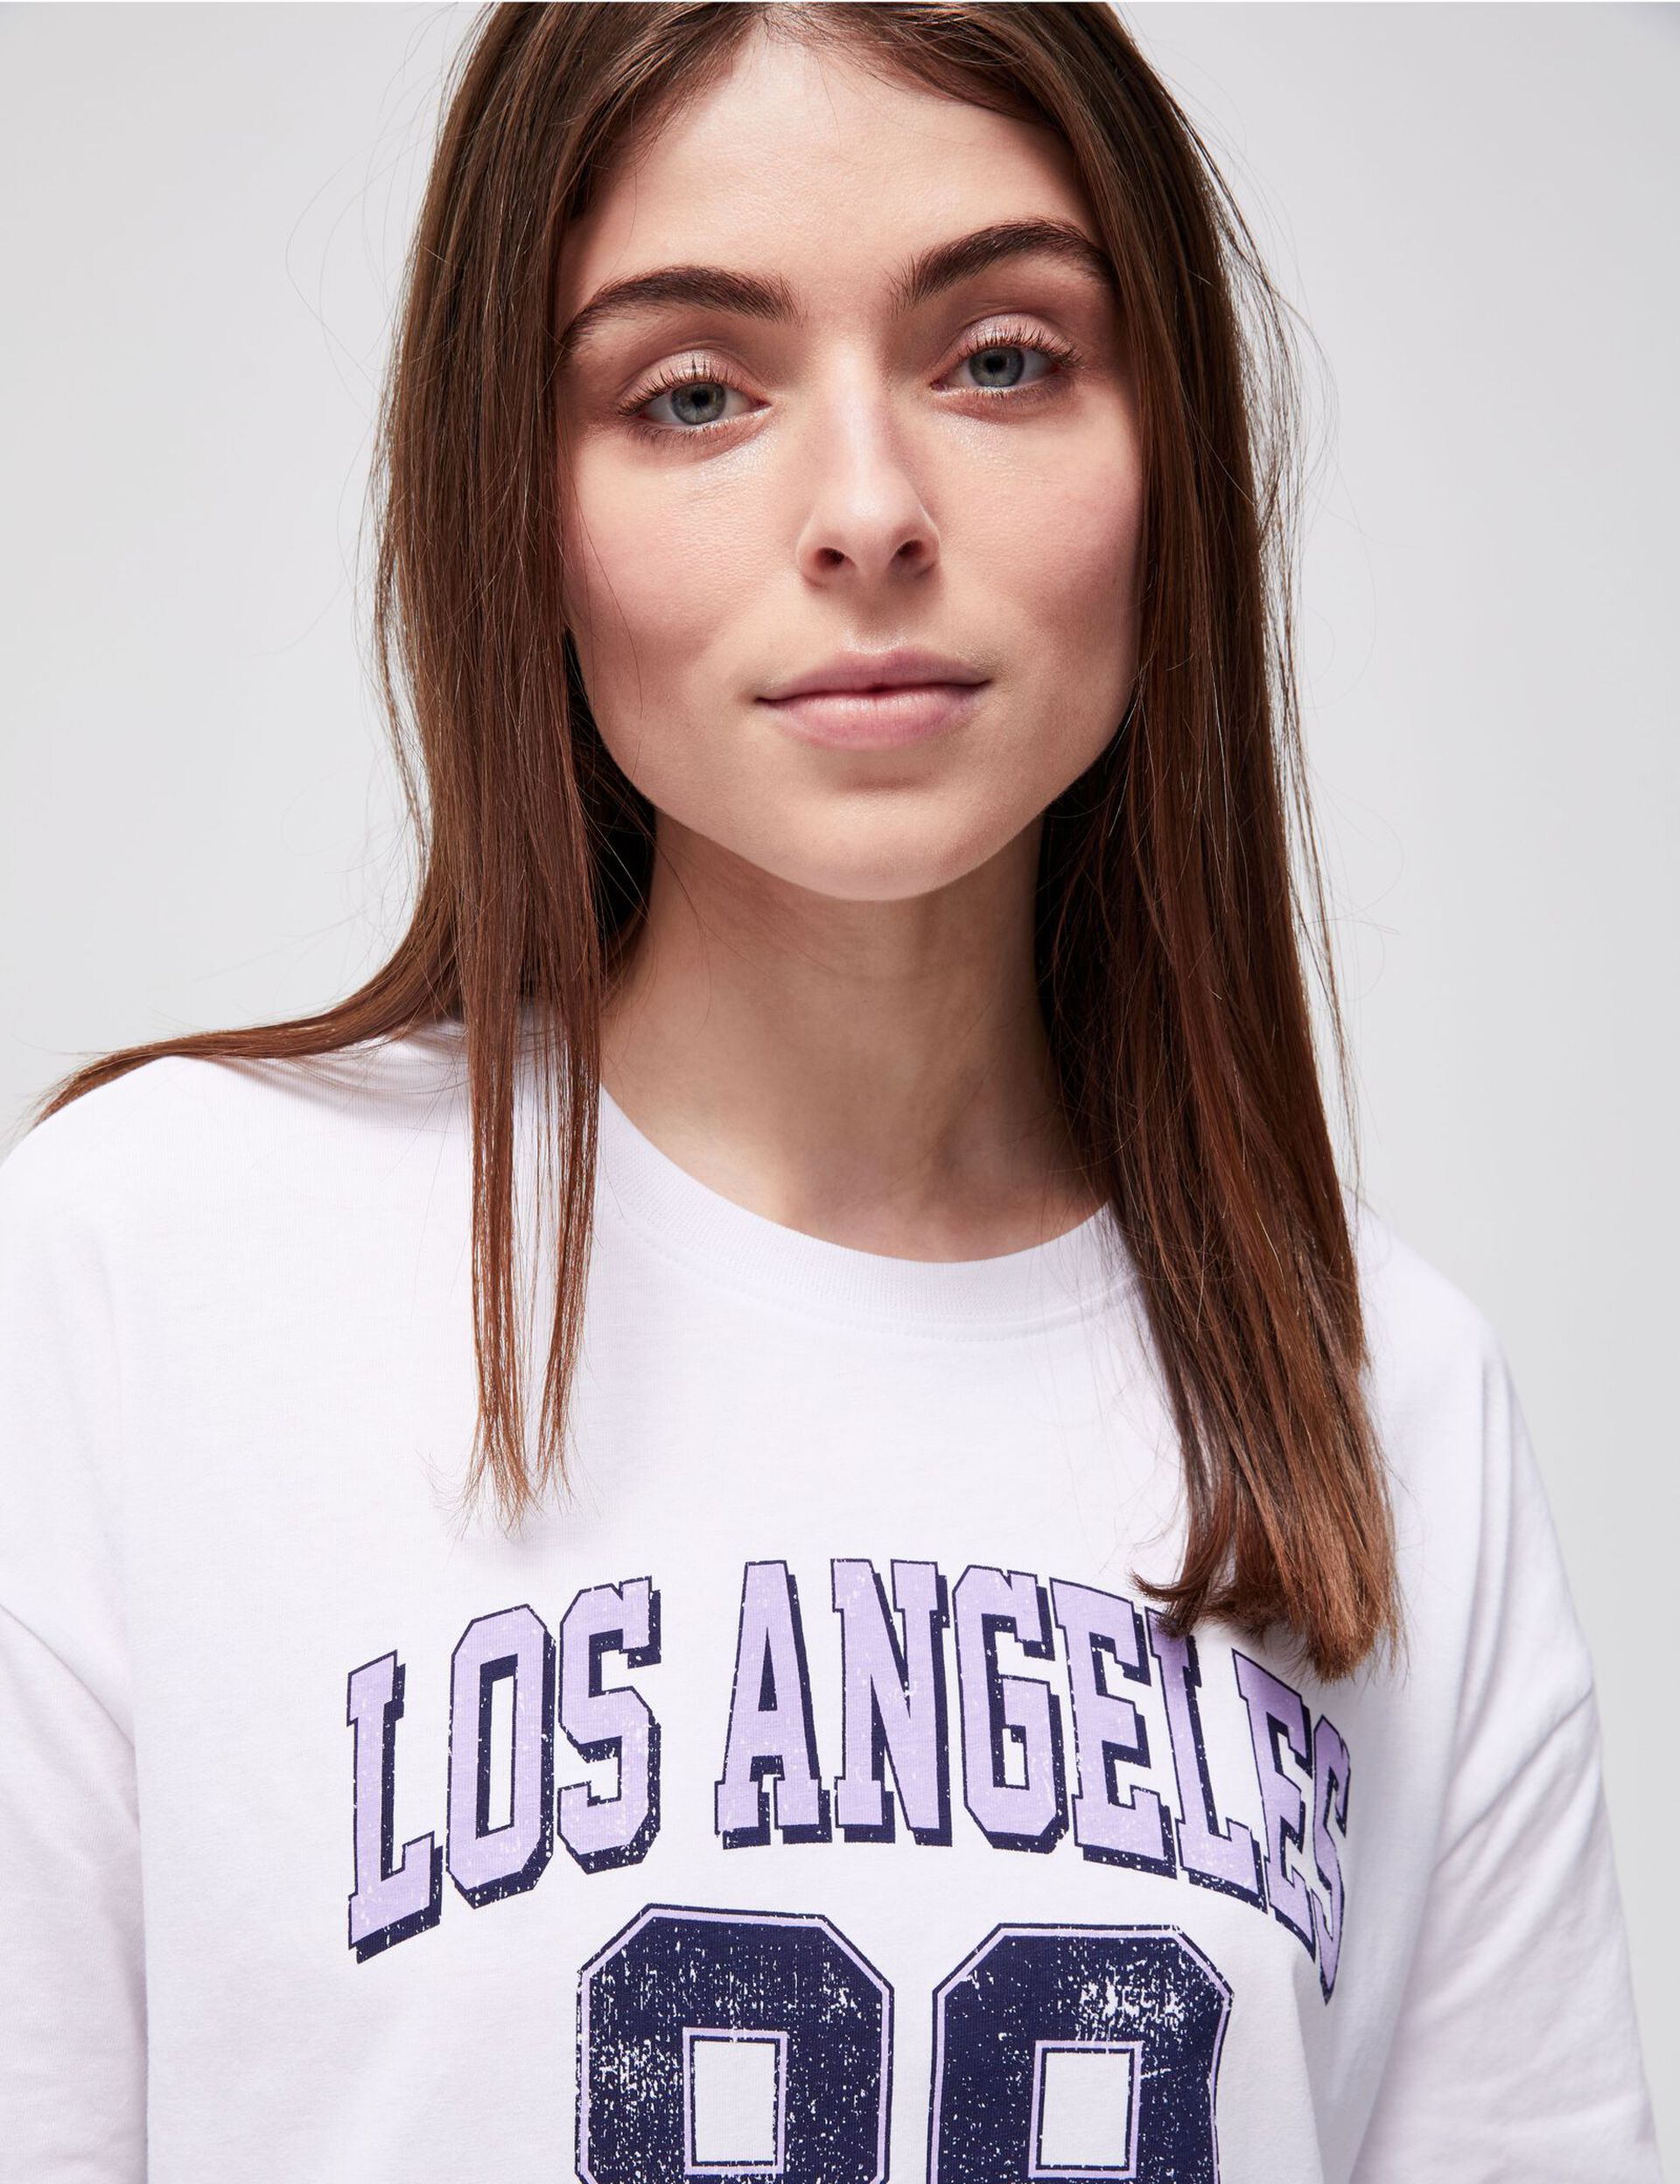 Tee-shirt blanc Los Angeles